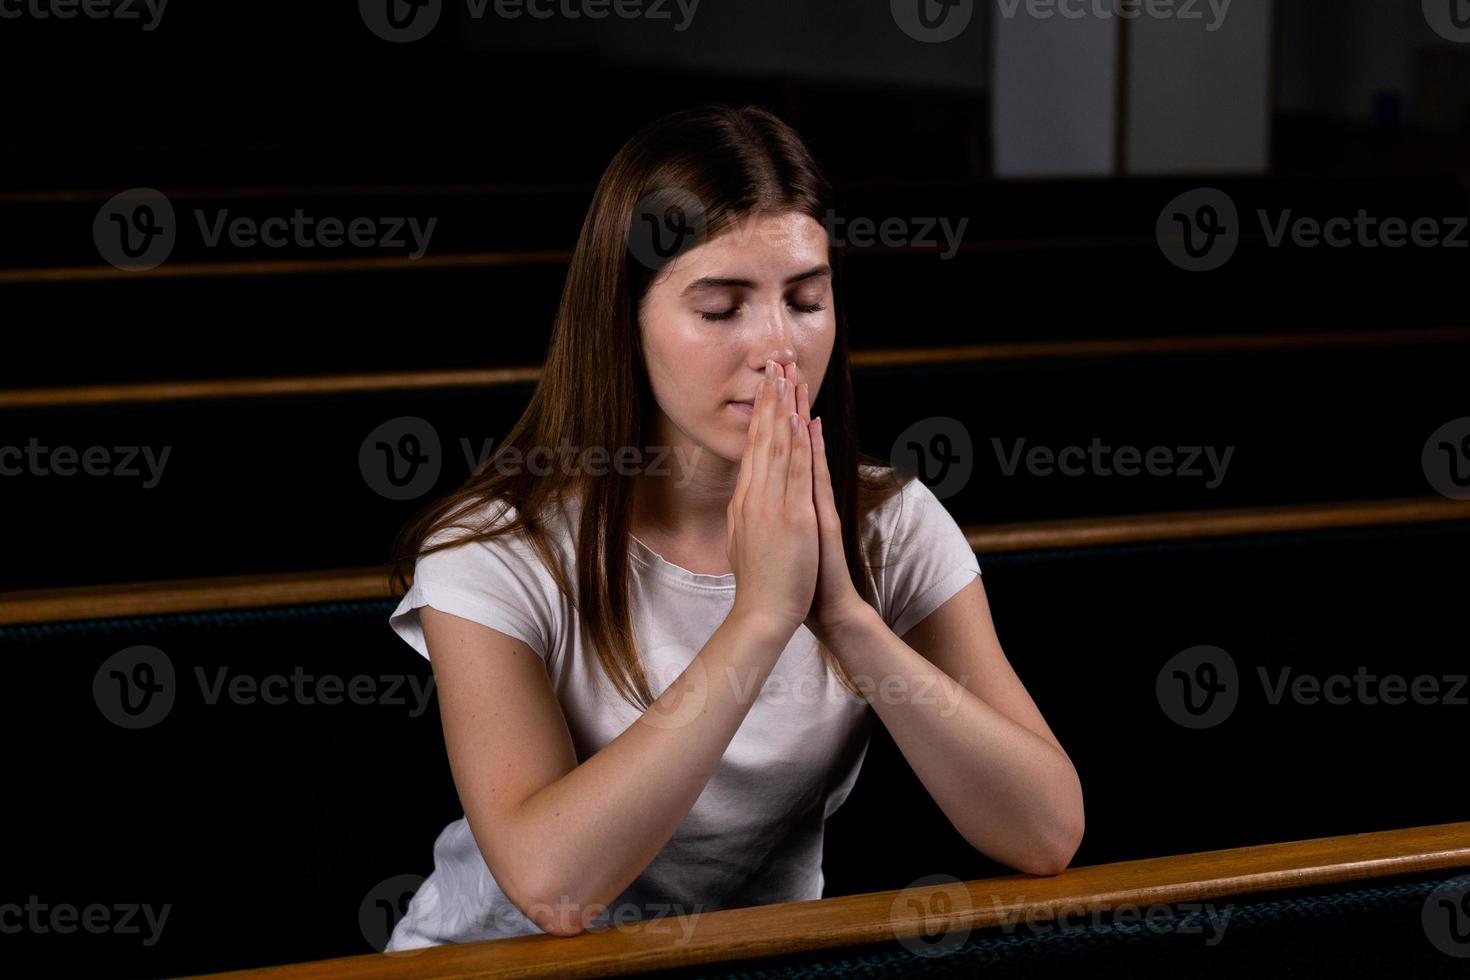 una niña cristiana con camisa blanca está orando con corazón humilde en la iglesia foto